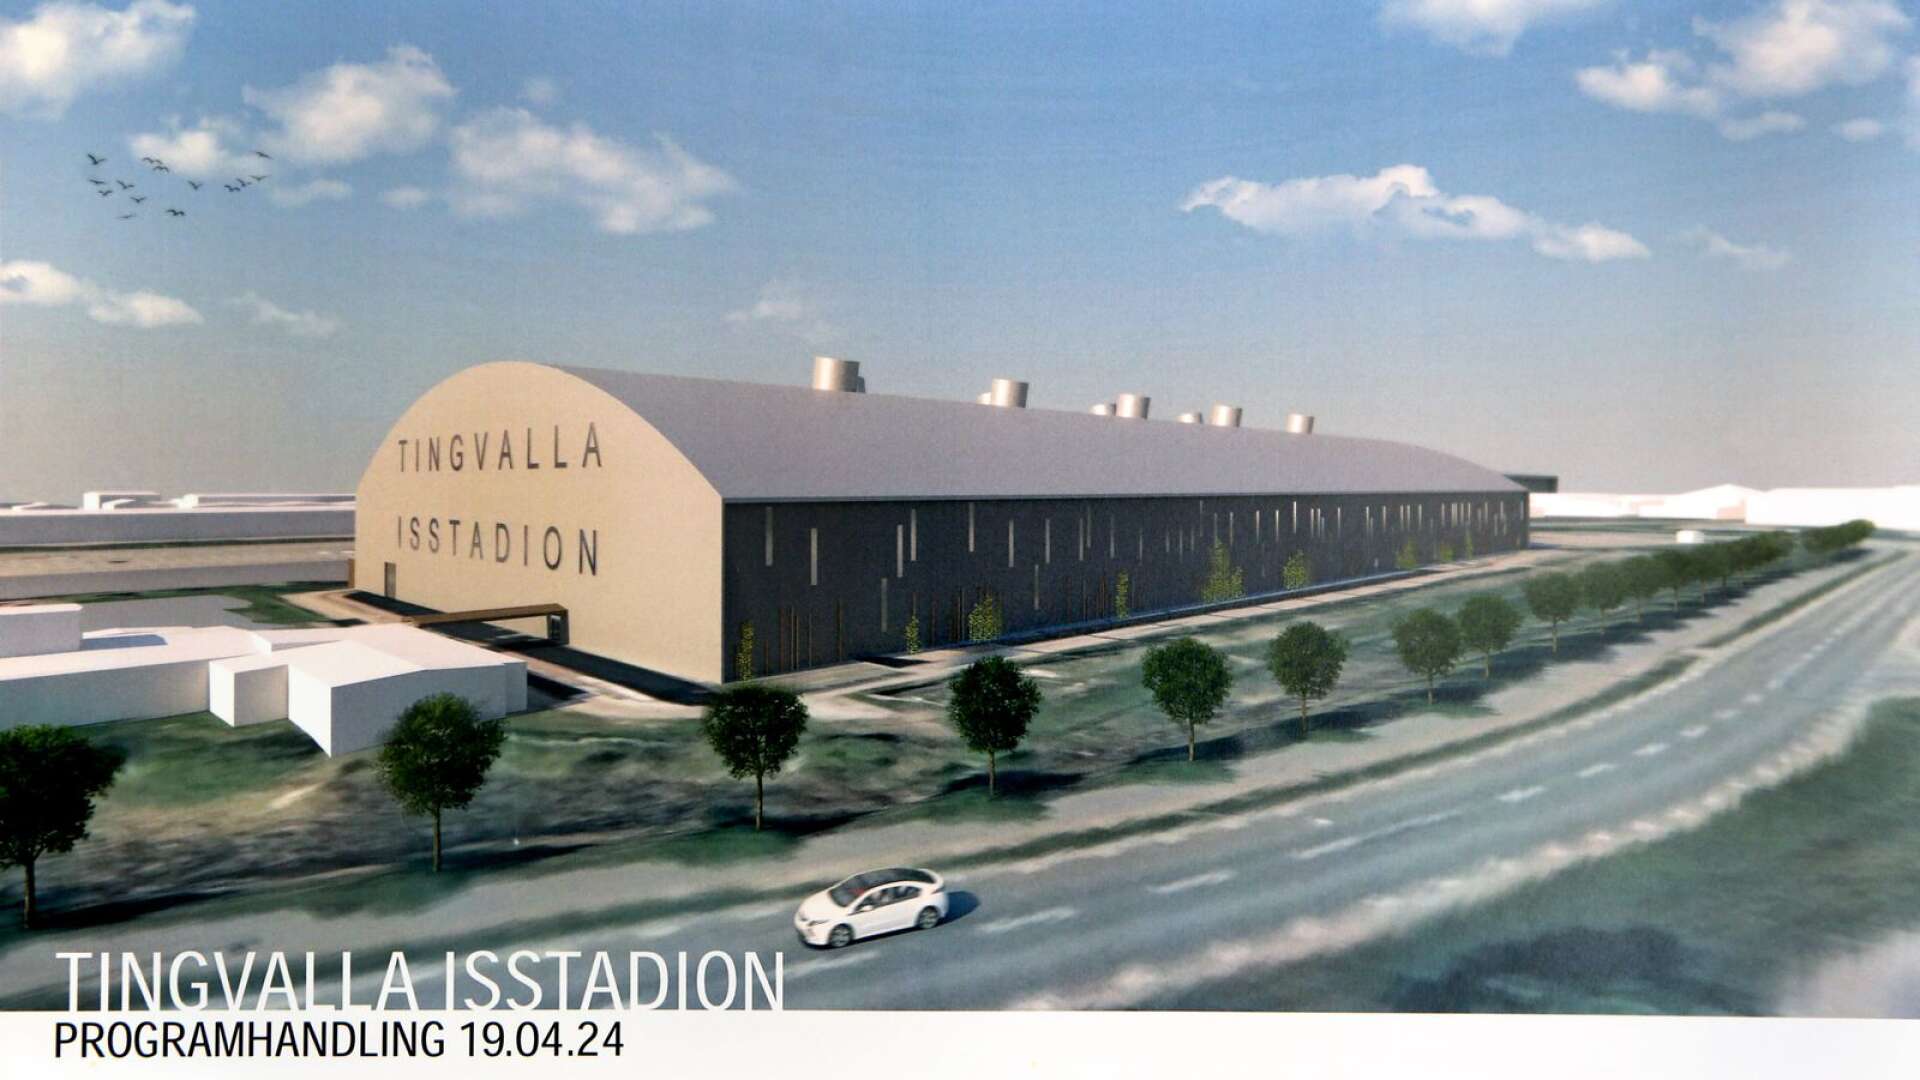 2021 inleds bygget av nya Tingvalla isstadion. Nu har den nya detaljplanen antagits.